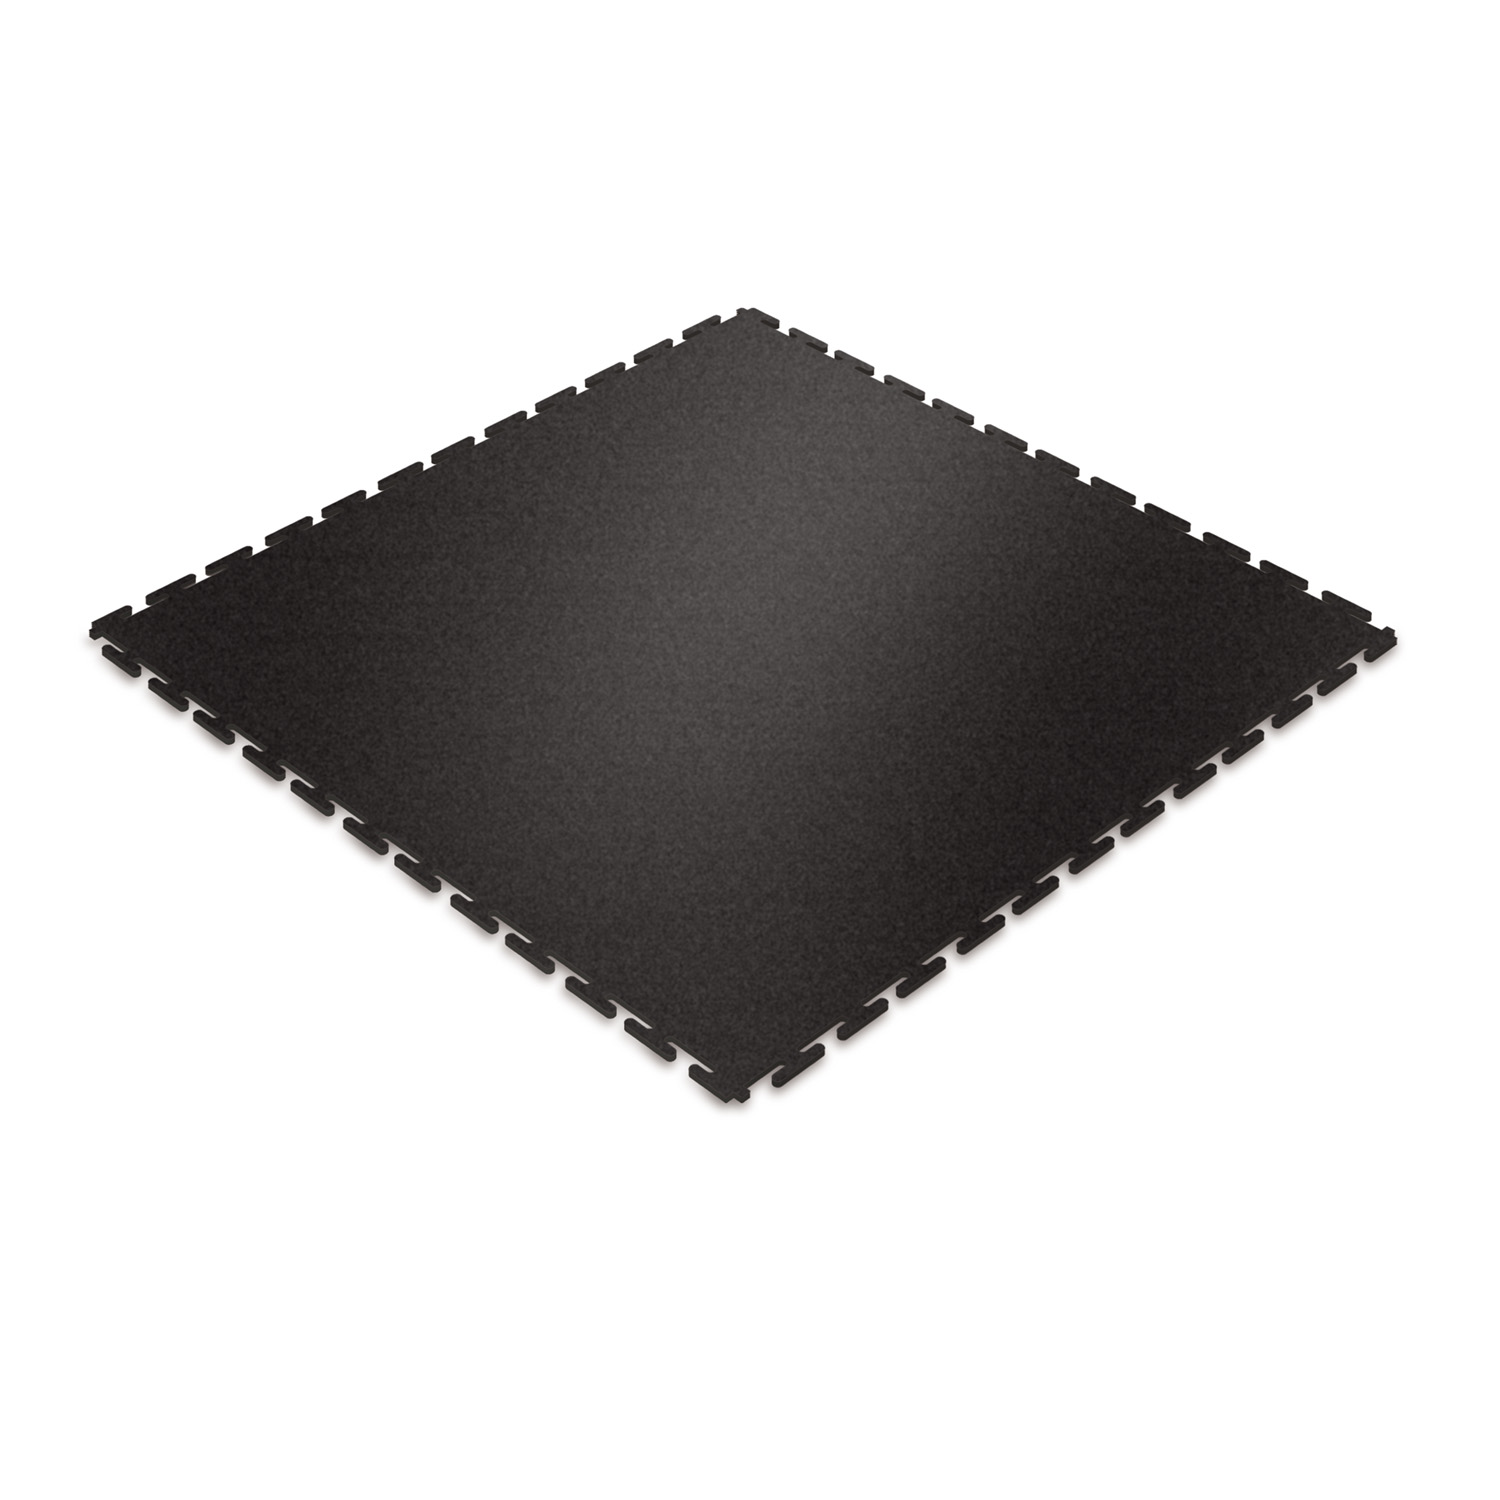 Standard floor tile (black/textured)